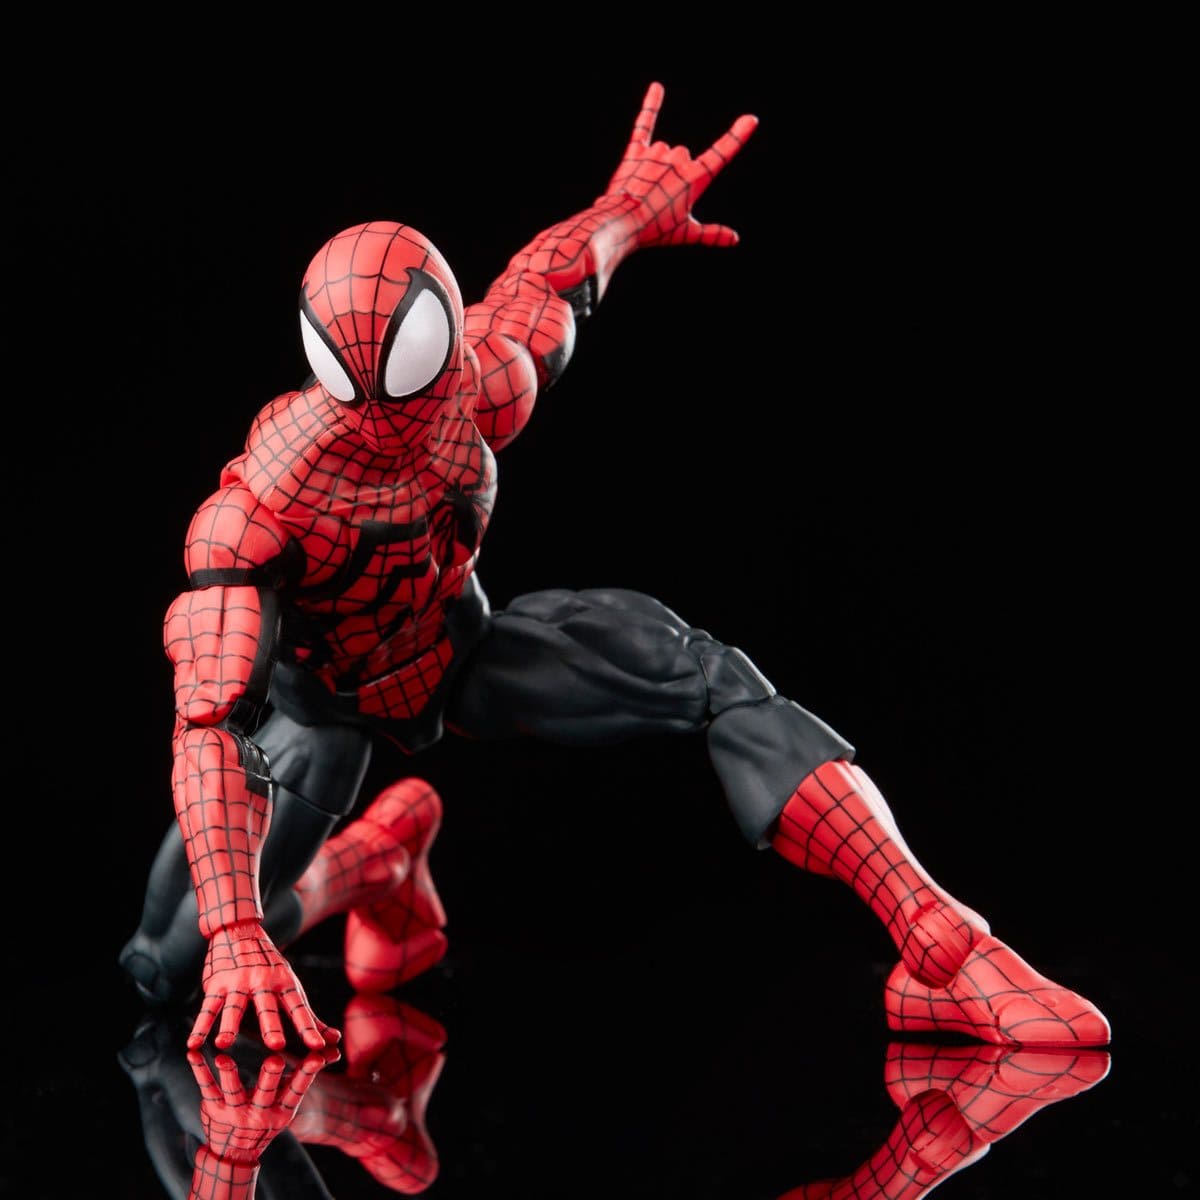 Spider-Man Retro Marvel Legends Ben Reilly Spider-Man 6-Inch Action Figure Spidey Pose